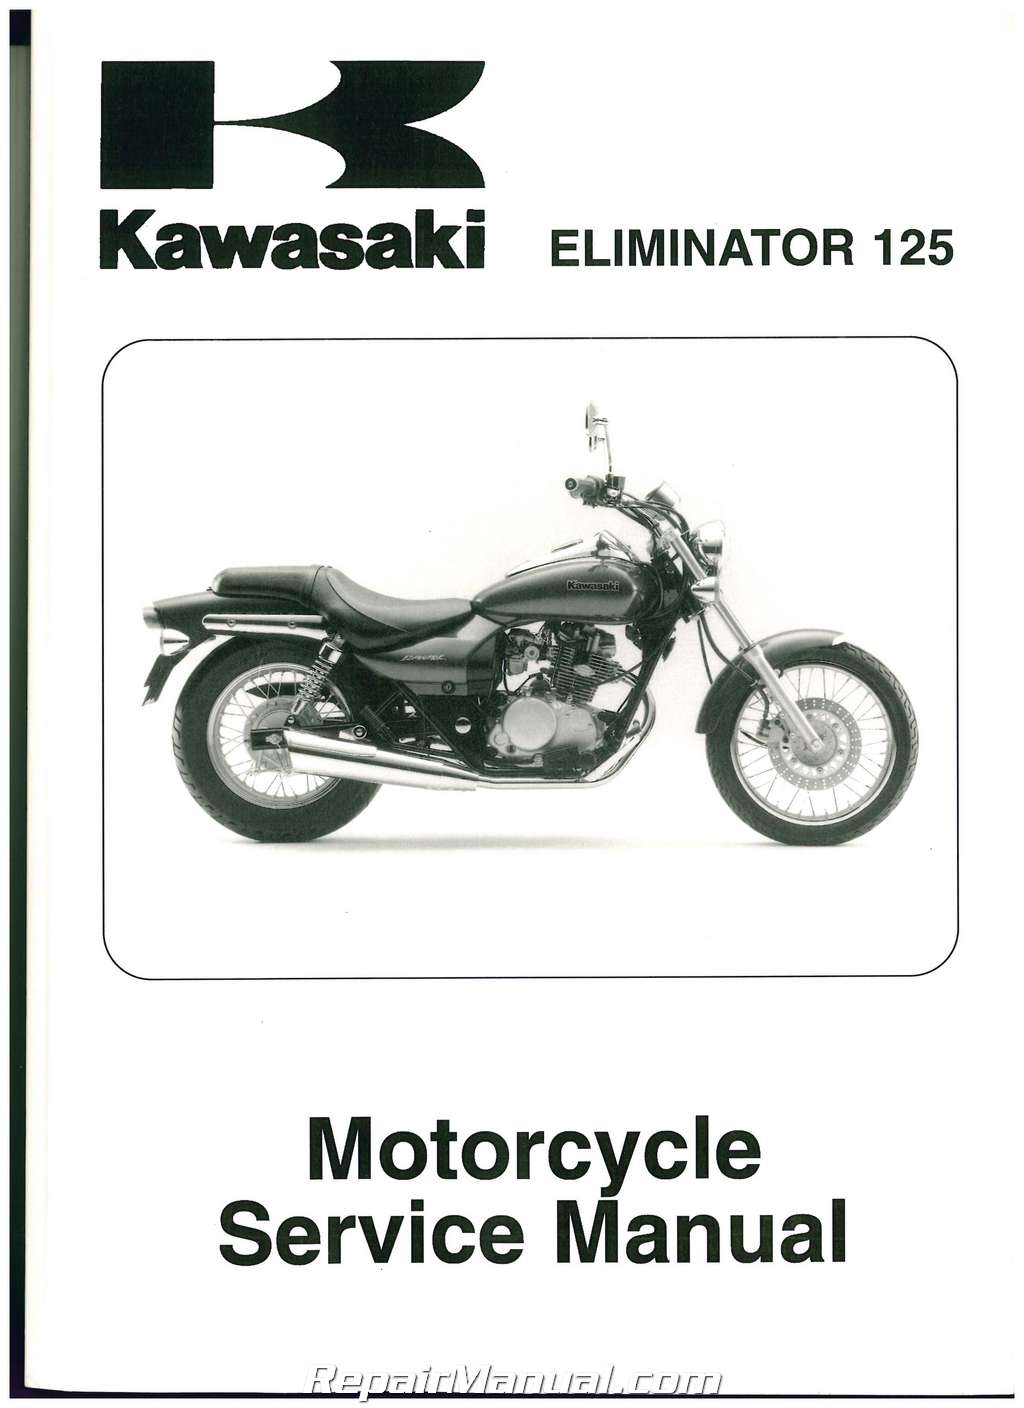 DID Std Kettensatz Kawasaki BN 125 Eliminator BN125A Bj 97-2007